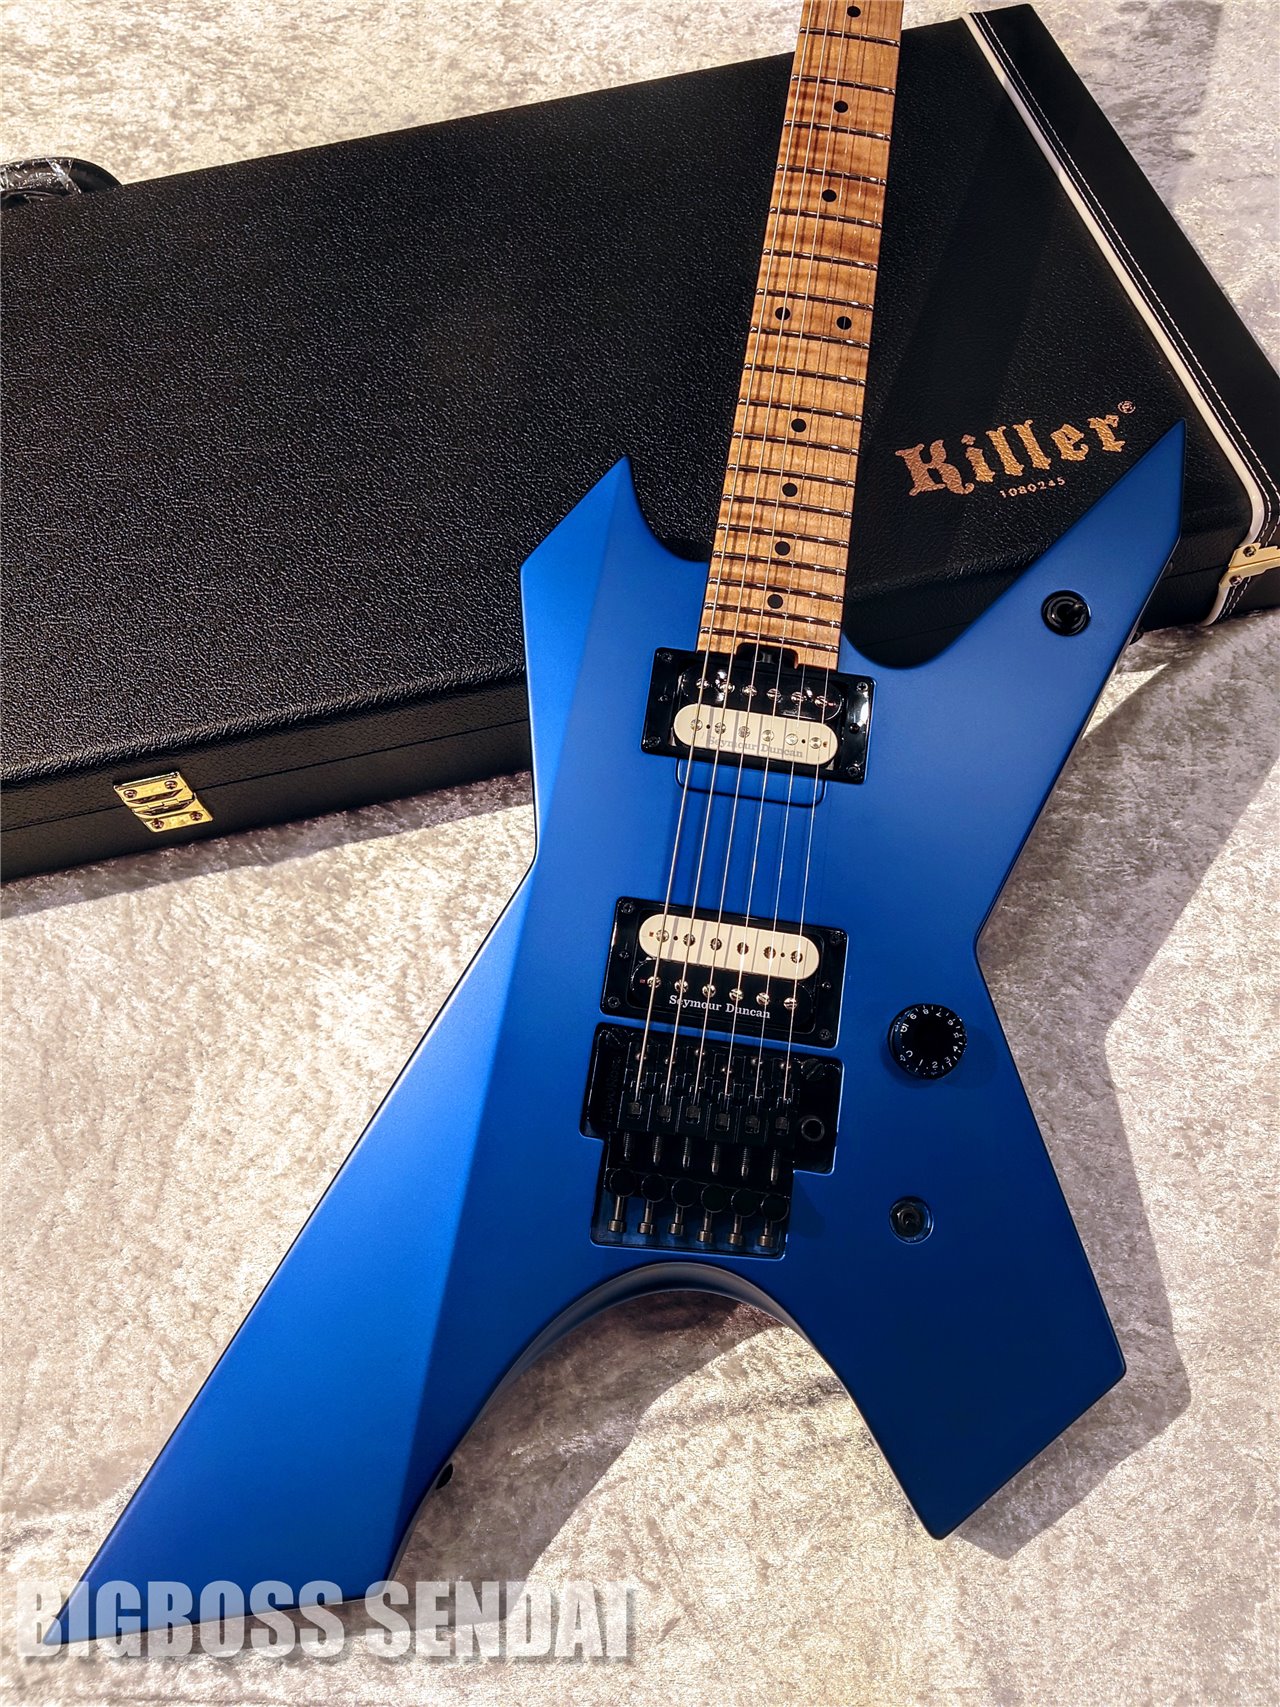 【即納可能】Killer(キラー) KG-Prime 21 the spirit / Matte blue metallic 仙台店